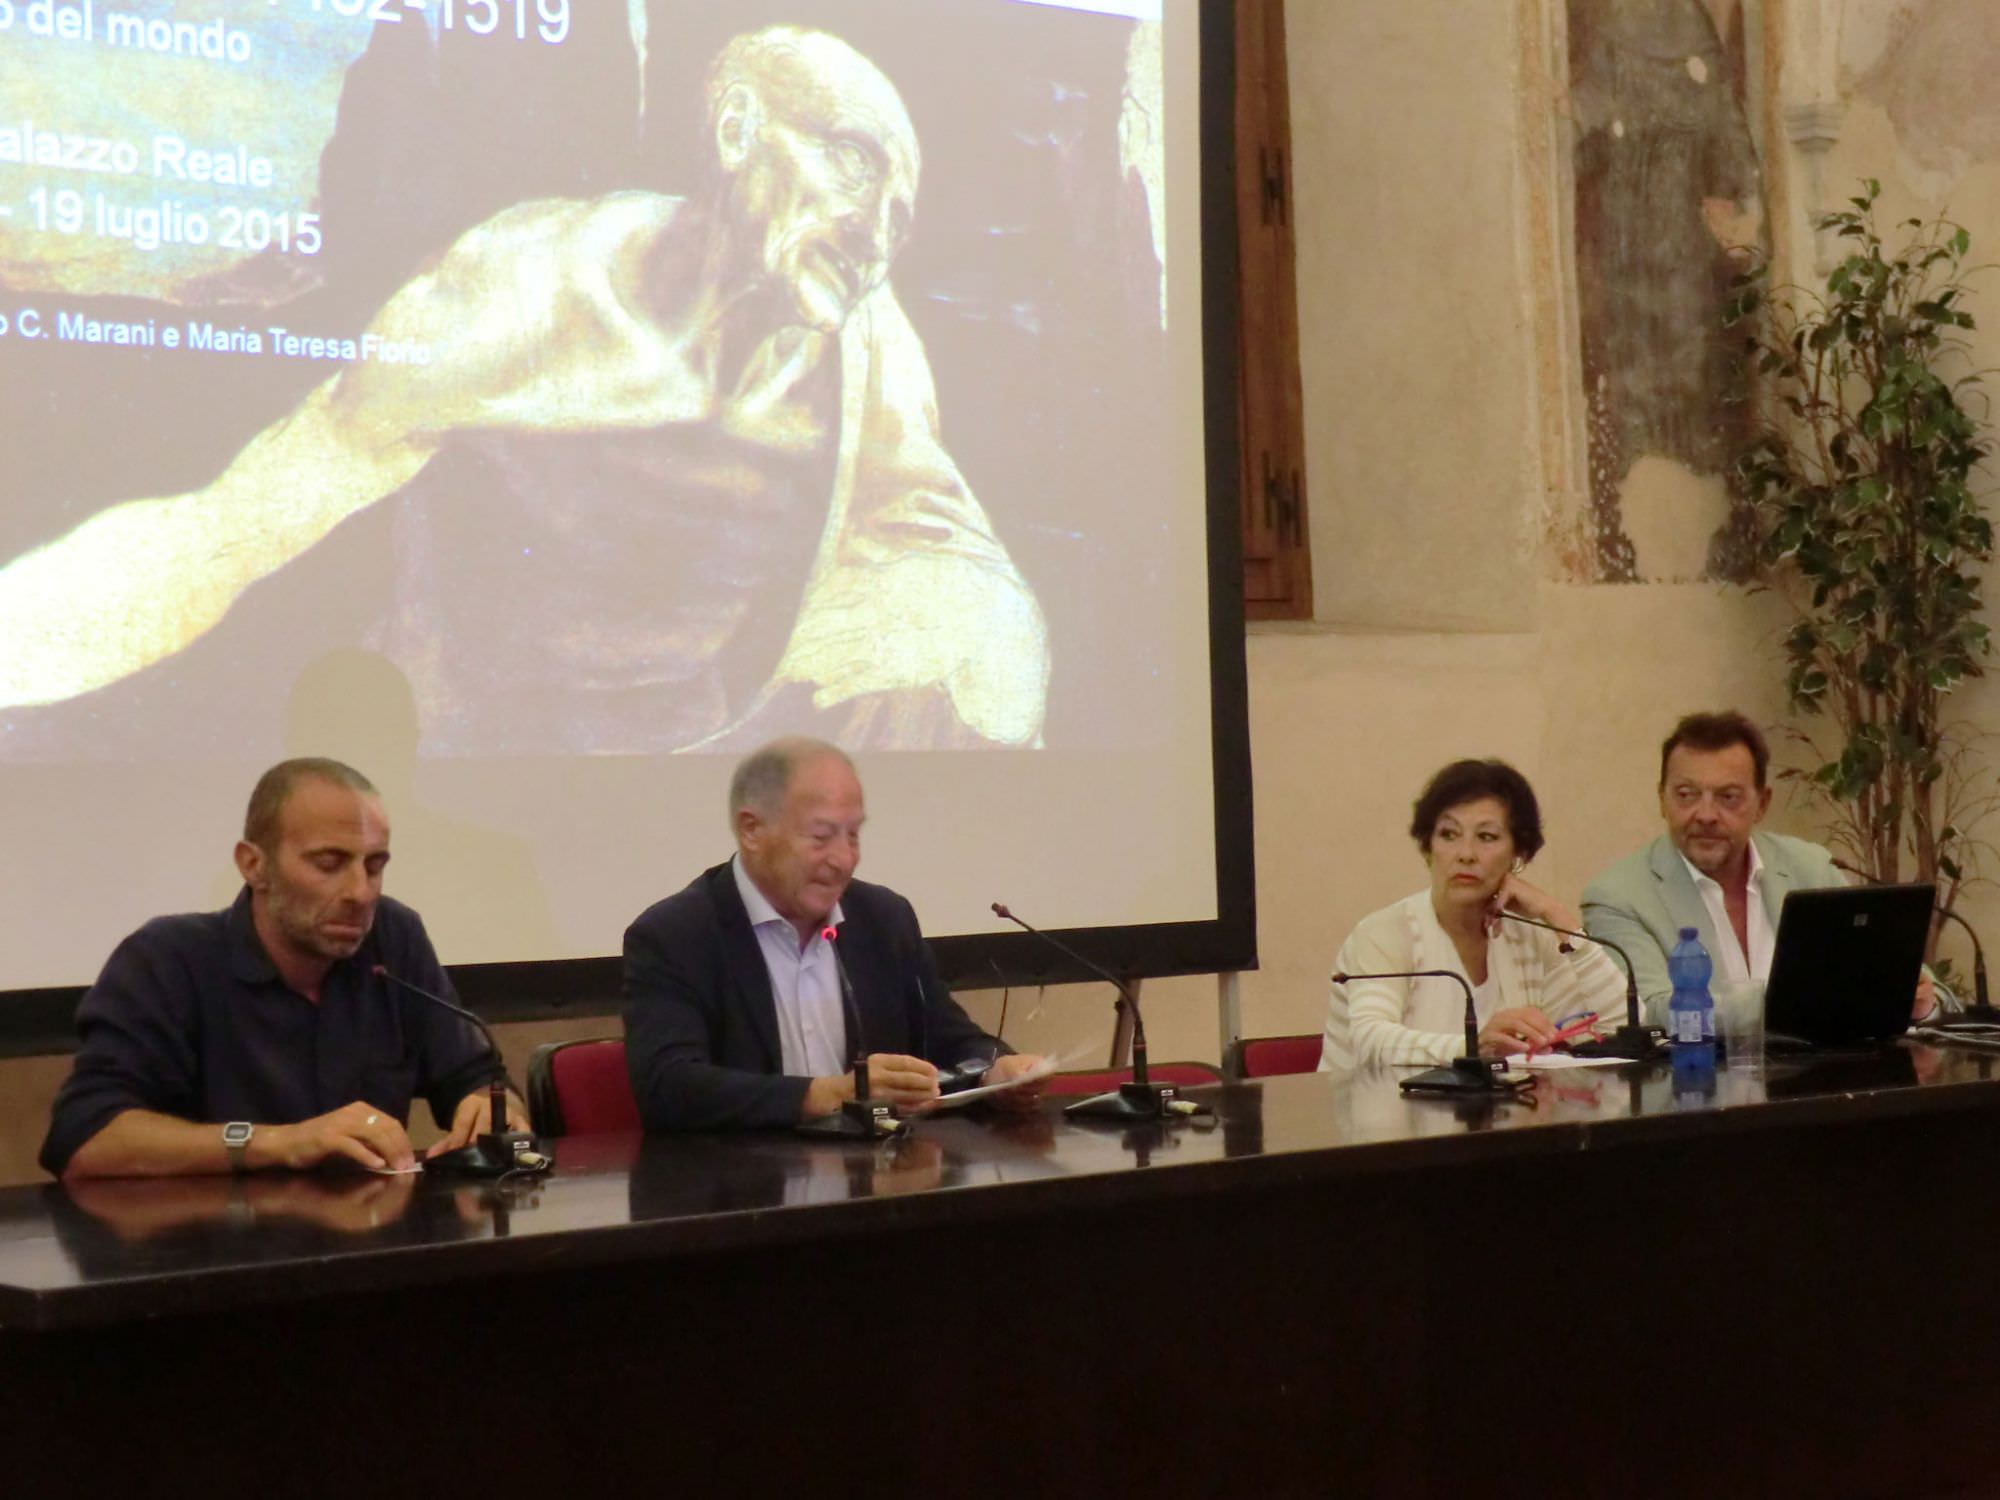 Expo 2015, Pietrasanta alla grande mostra su Leonardo con Botero e Aceves